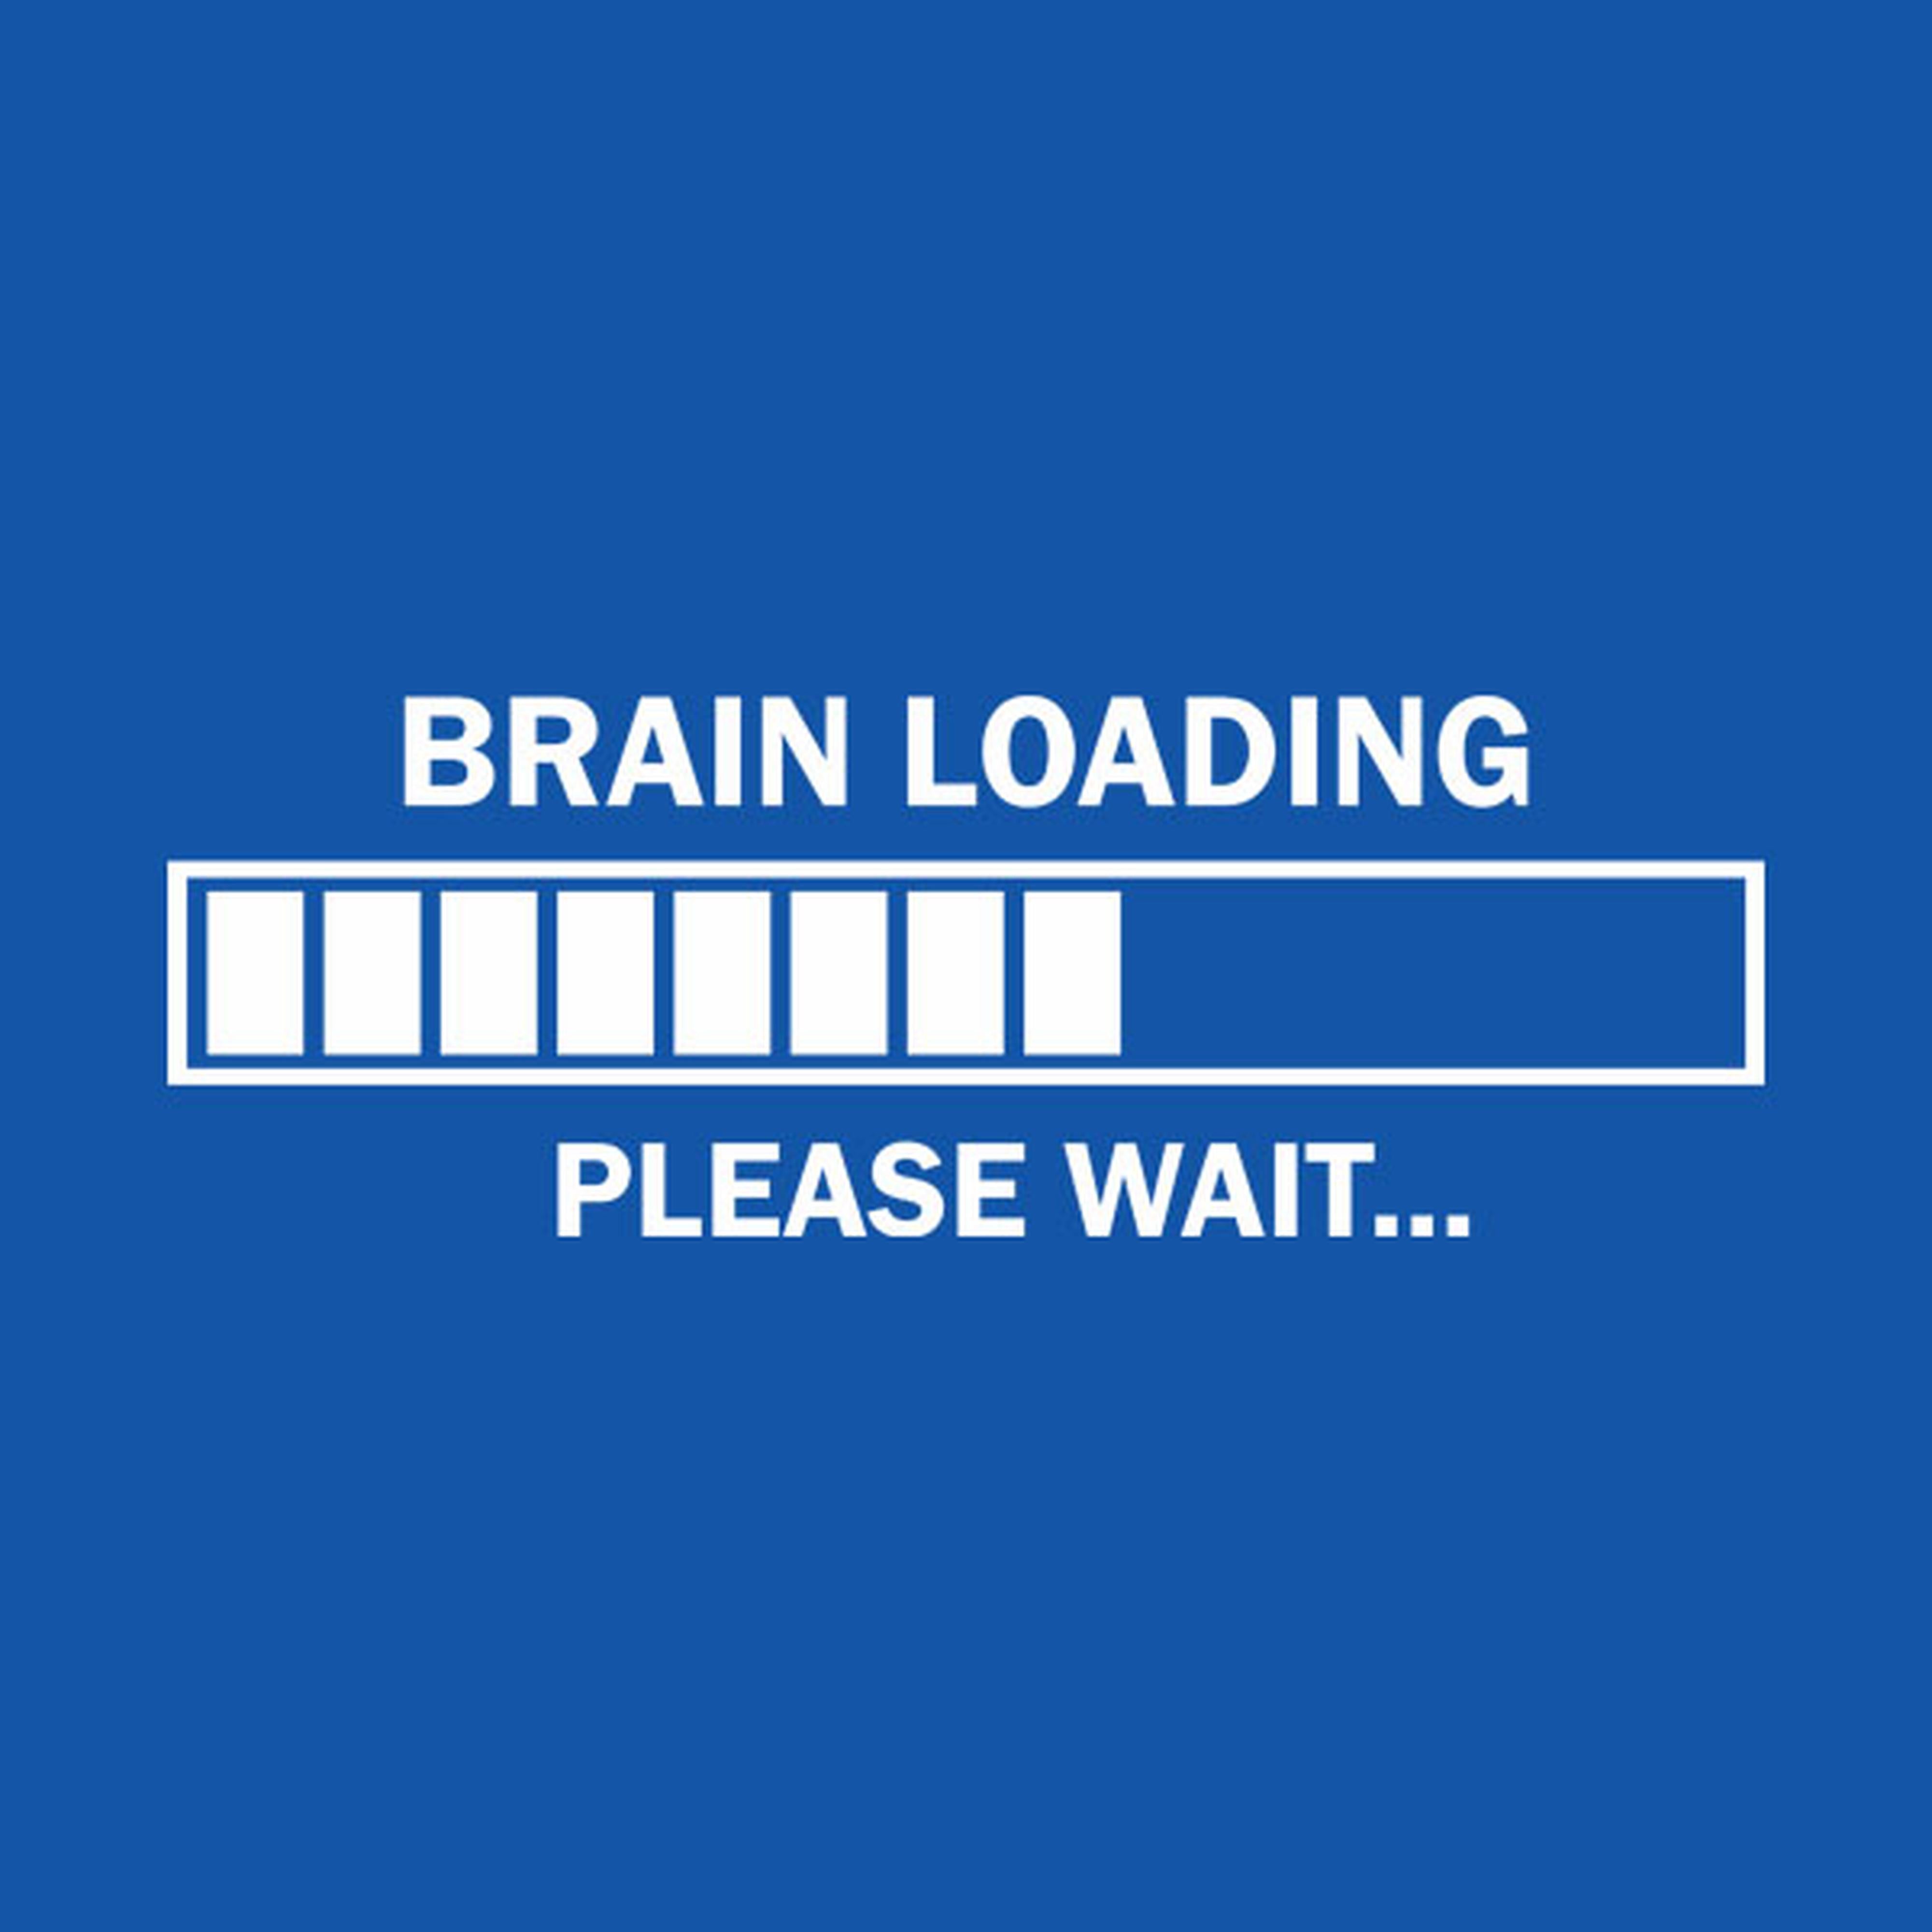 Brain loading. Please wait. - T-shirt